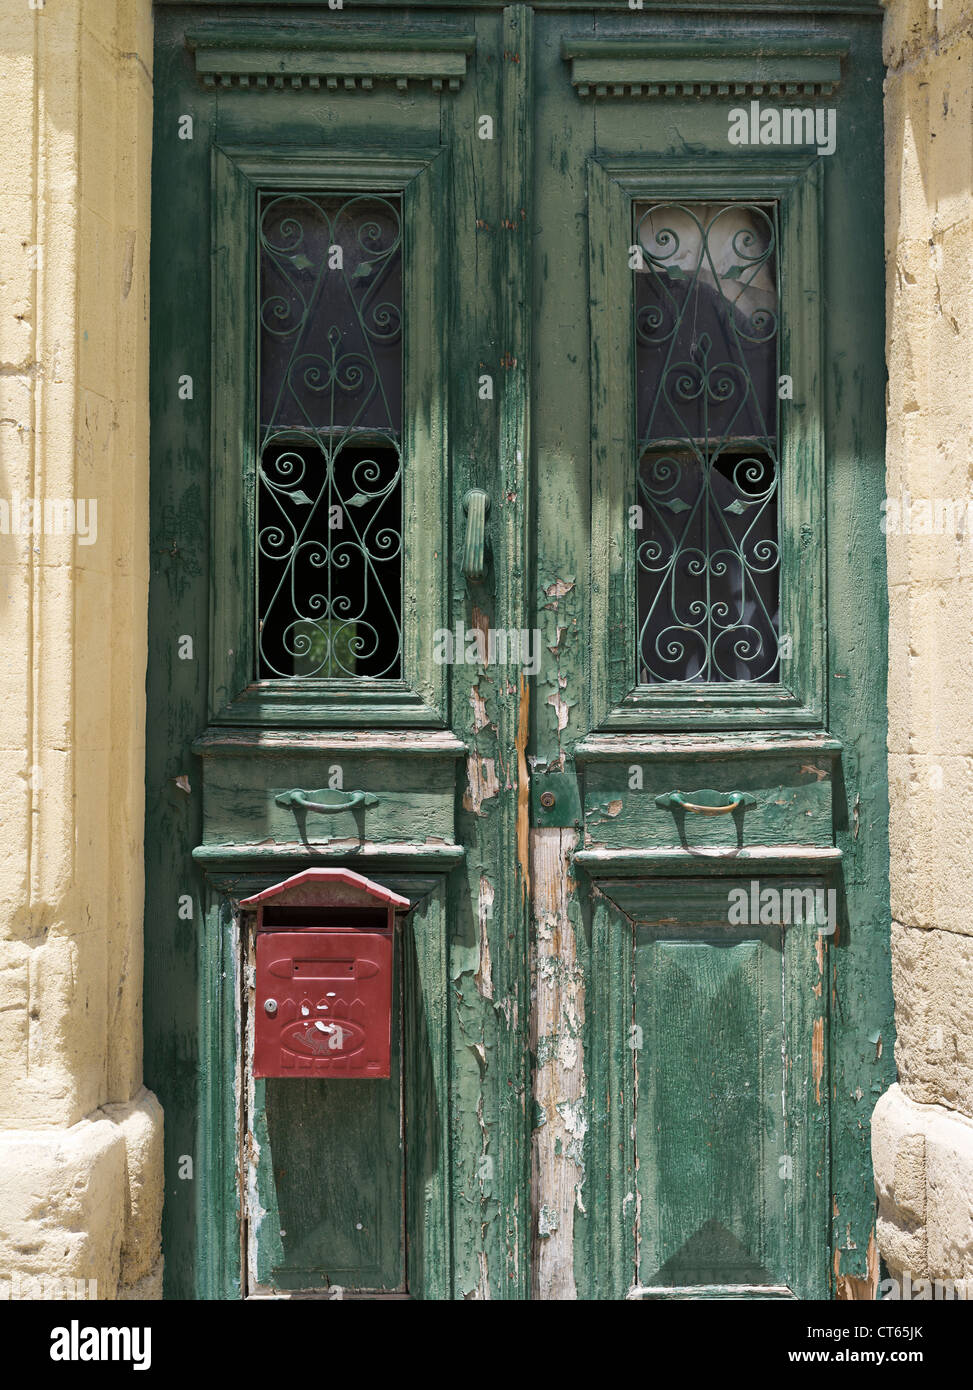 dh Altstadt Lefkosia NIKOSIA SÜD ZYPERN Zypern Haus Tür mit Briefkasten griechenland Briefkasten Tür Briefkasten Stockfoto